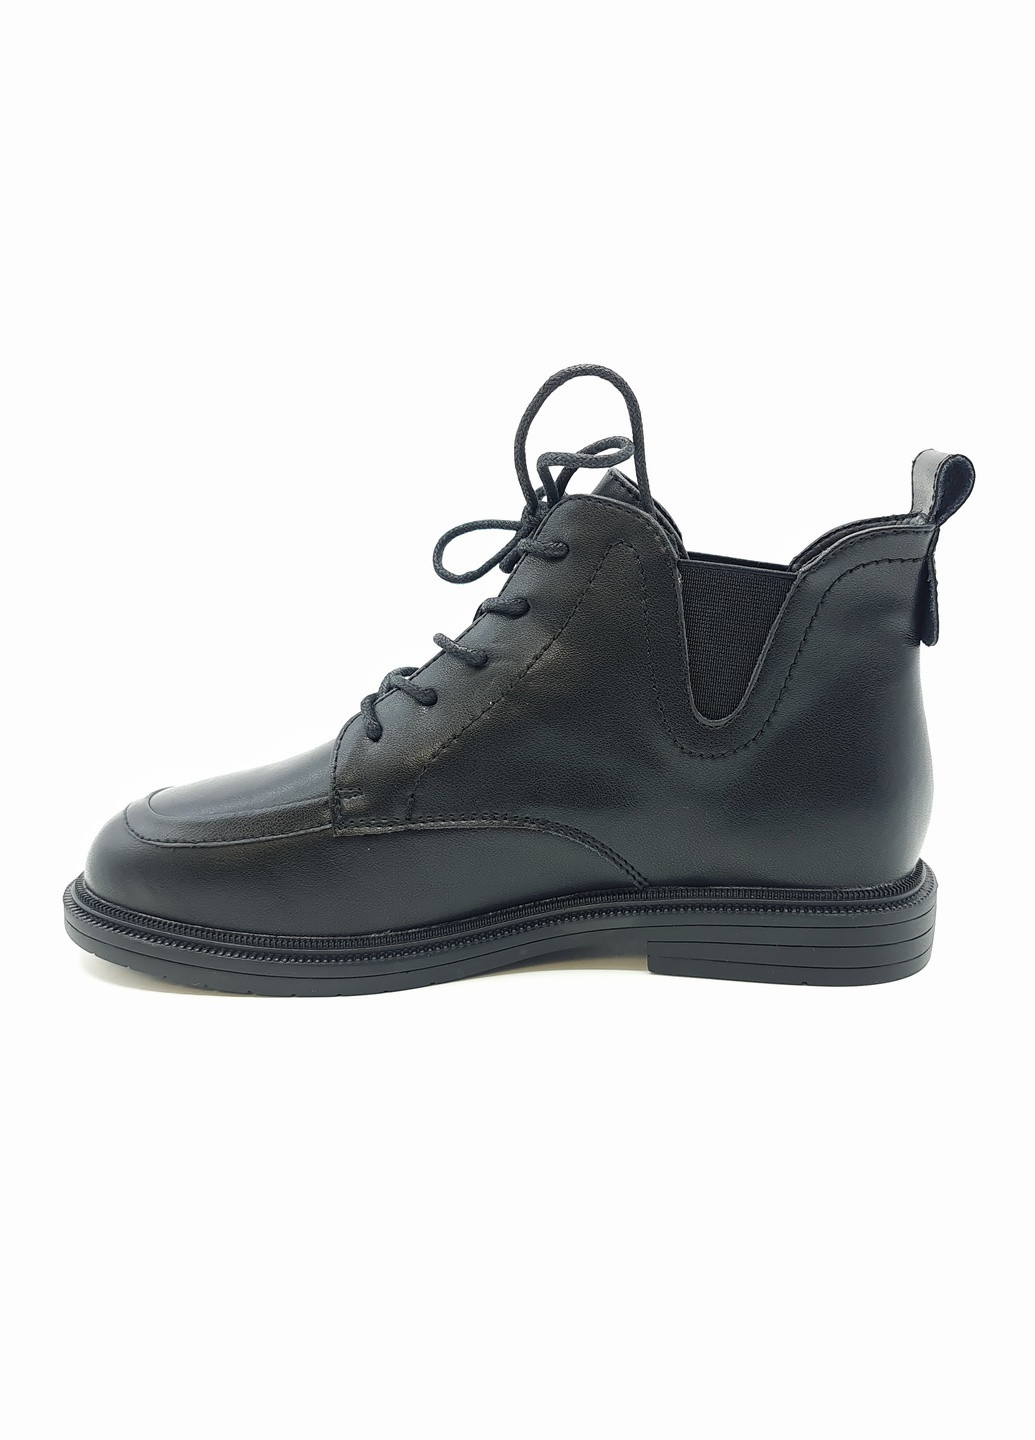 Жіночі черевики чорні шкіряні YA-18-9 25 см (р) Yalasou (259299705)